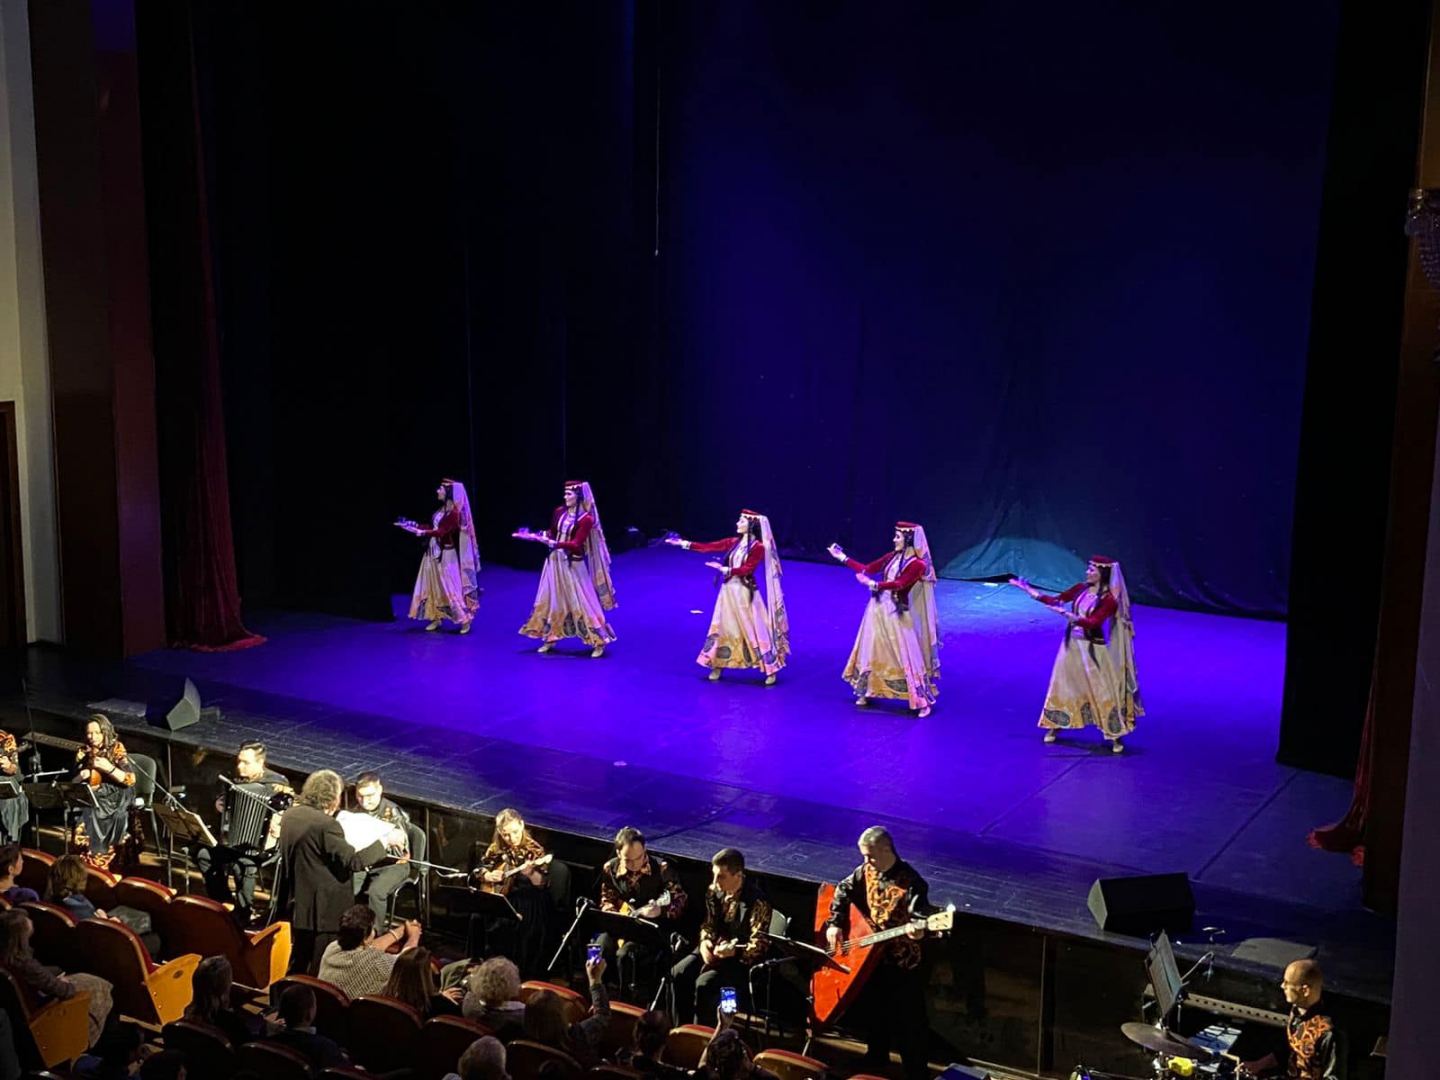 Российский коллектив "Морошка" представил азербайджанские песни и танцы (ВИДЕО, ФОТО)